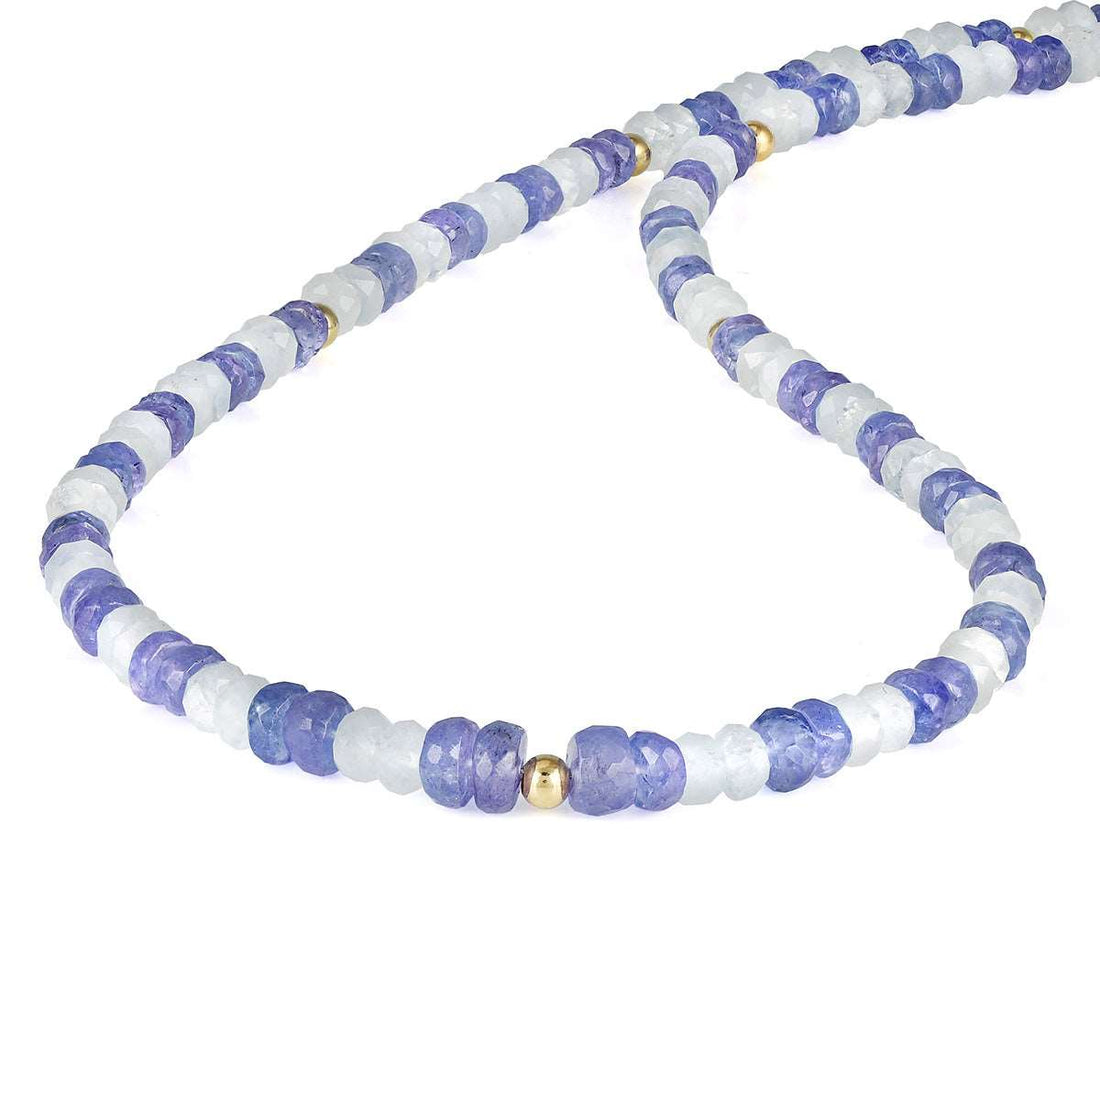 Aquamarine and Tanzanite Silver Necklace